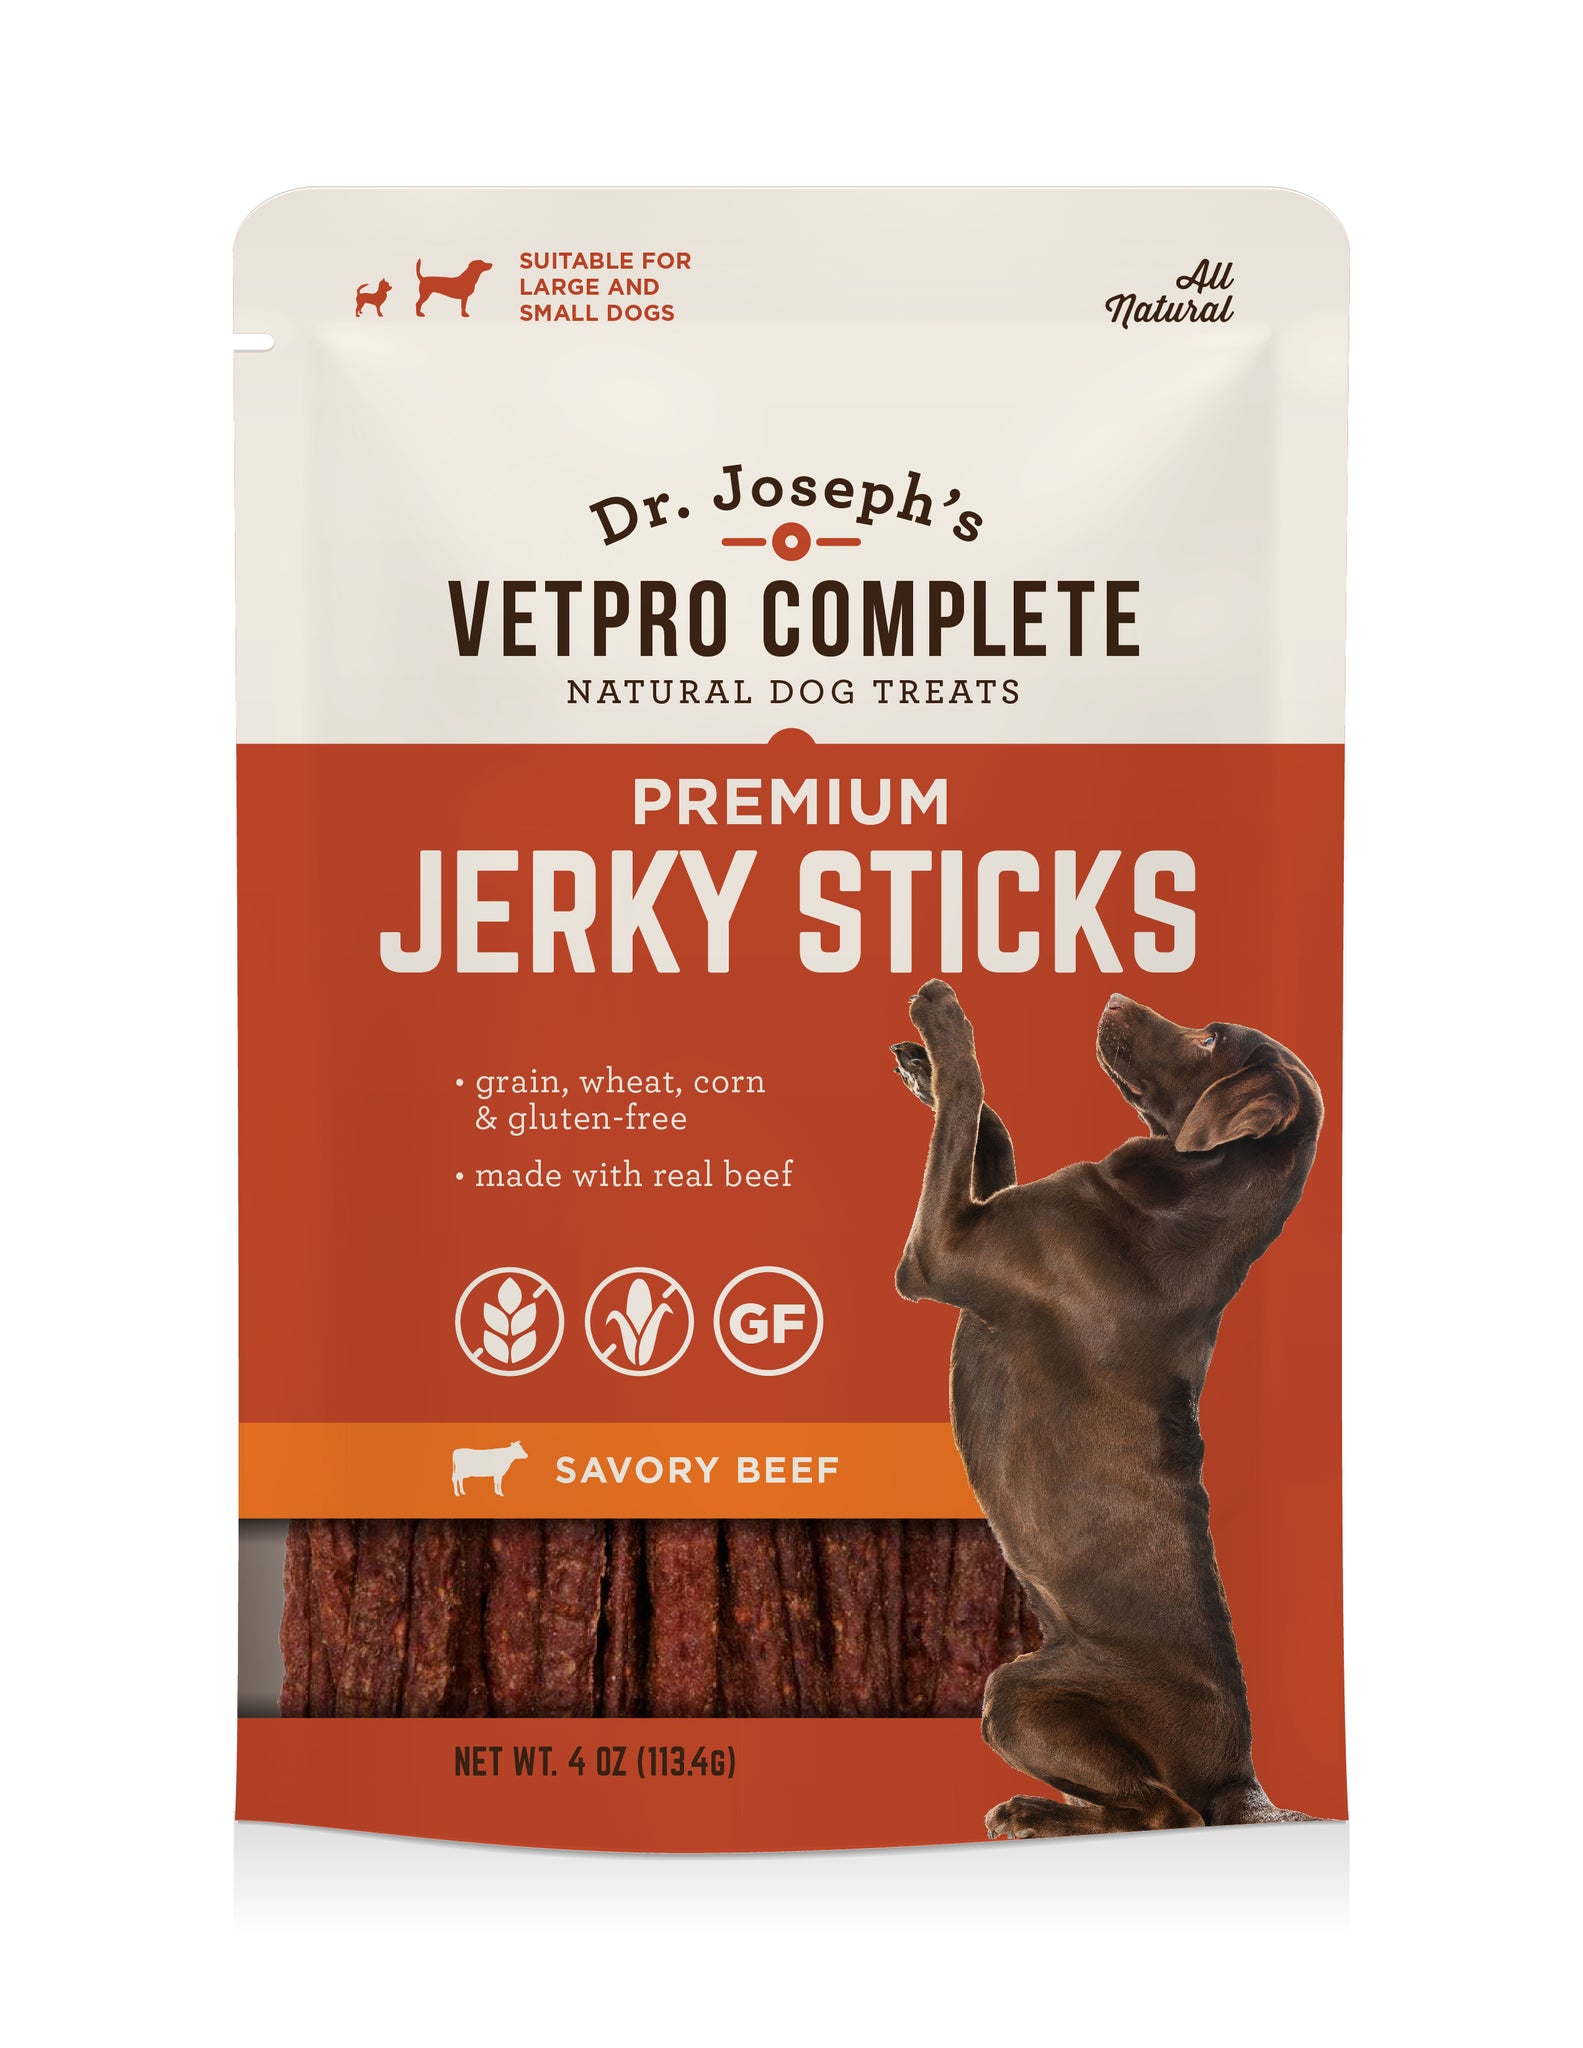 Dr Josephs Jerky Sticks for Dogs - Vetpro Complete